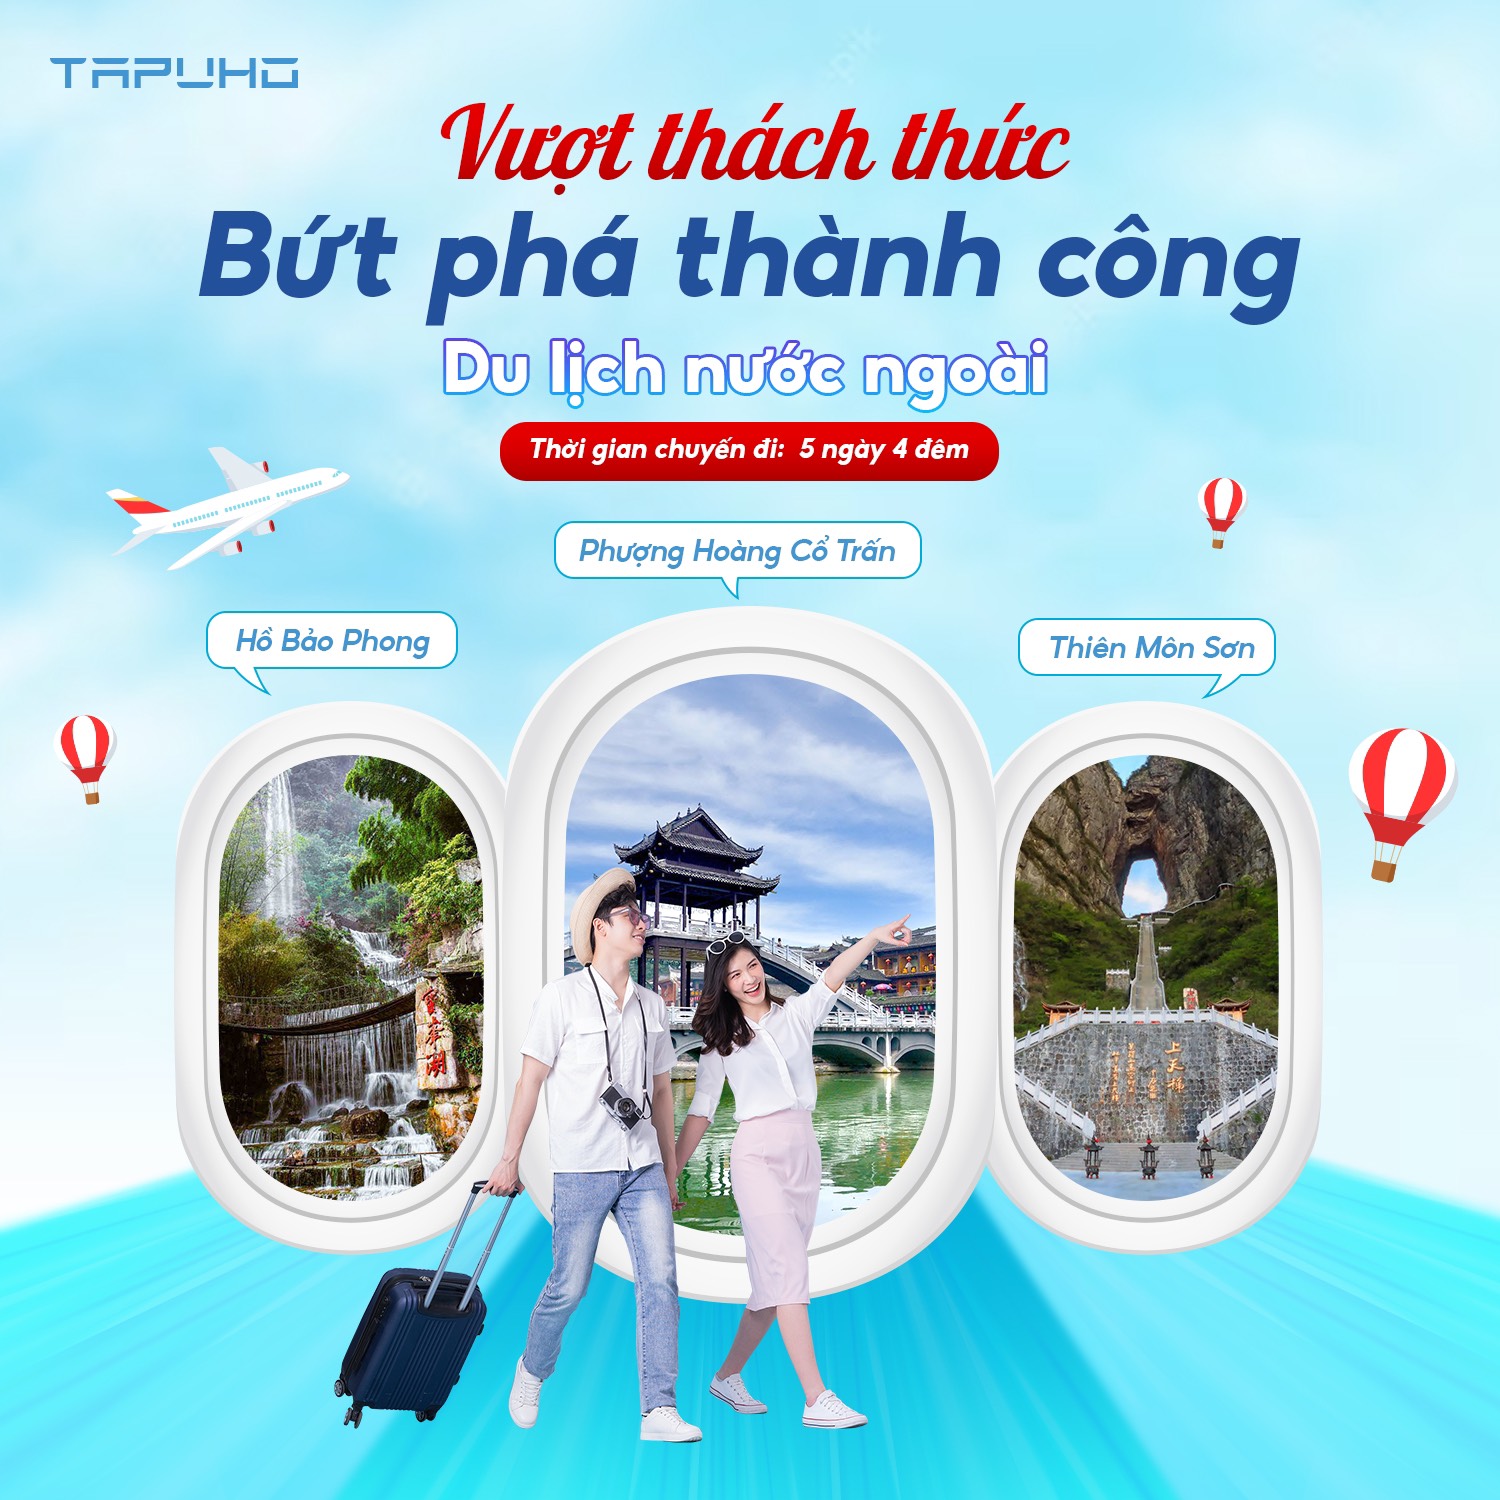 Chương trình Du lịch Tri ân đối tác của TAPUHO Việt Nam: “VƯỢT THÁCH THỨC – BỨT PHÁ THÀNH CÔNG”